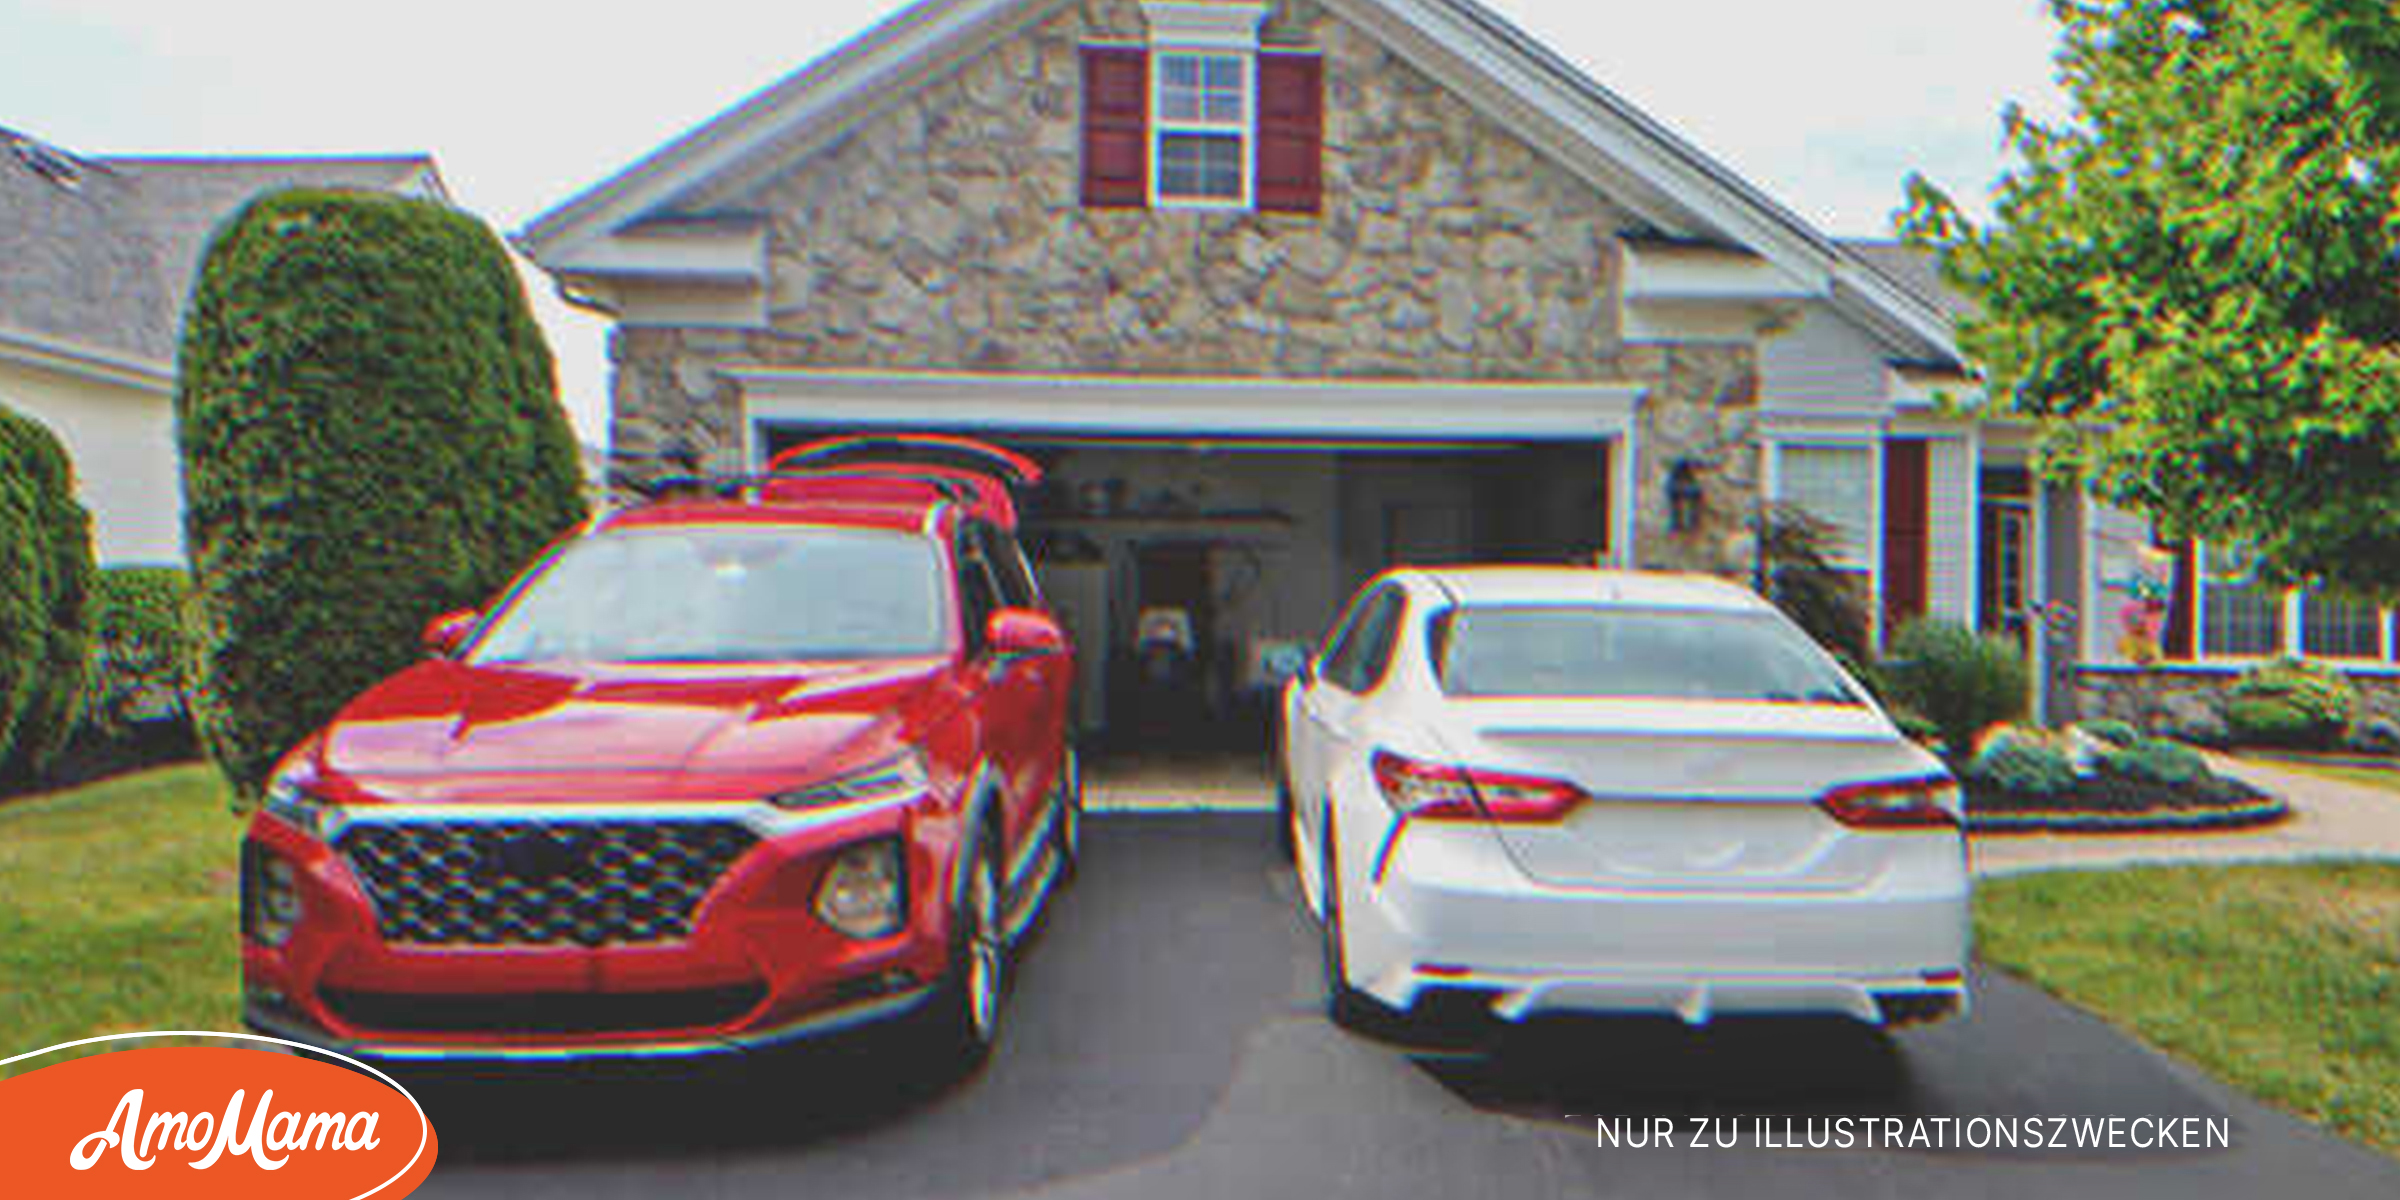 Ein roter SUV und eine weiße Limousine parken in einer Einfahrt | Quelle: Shutterstock